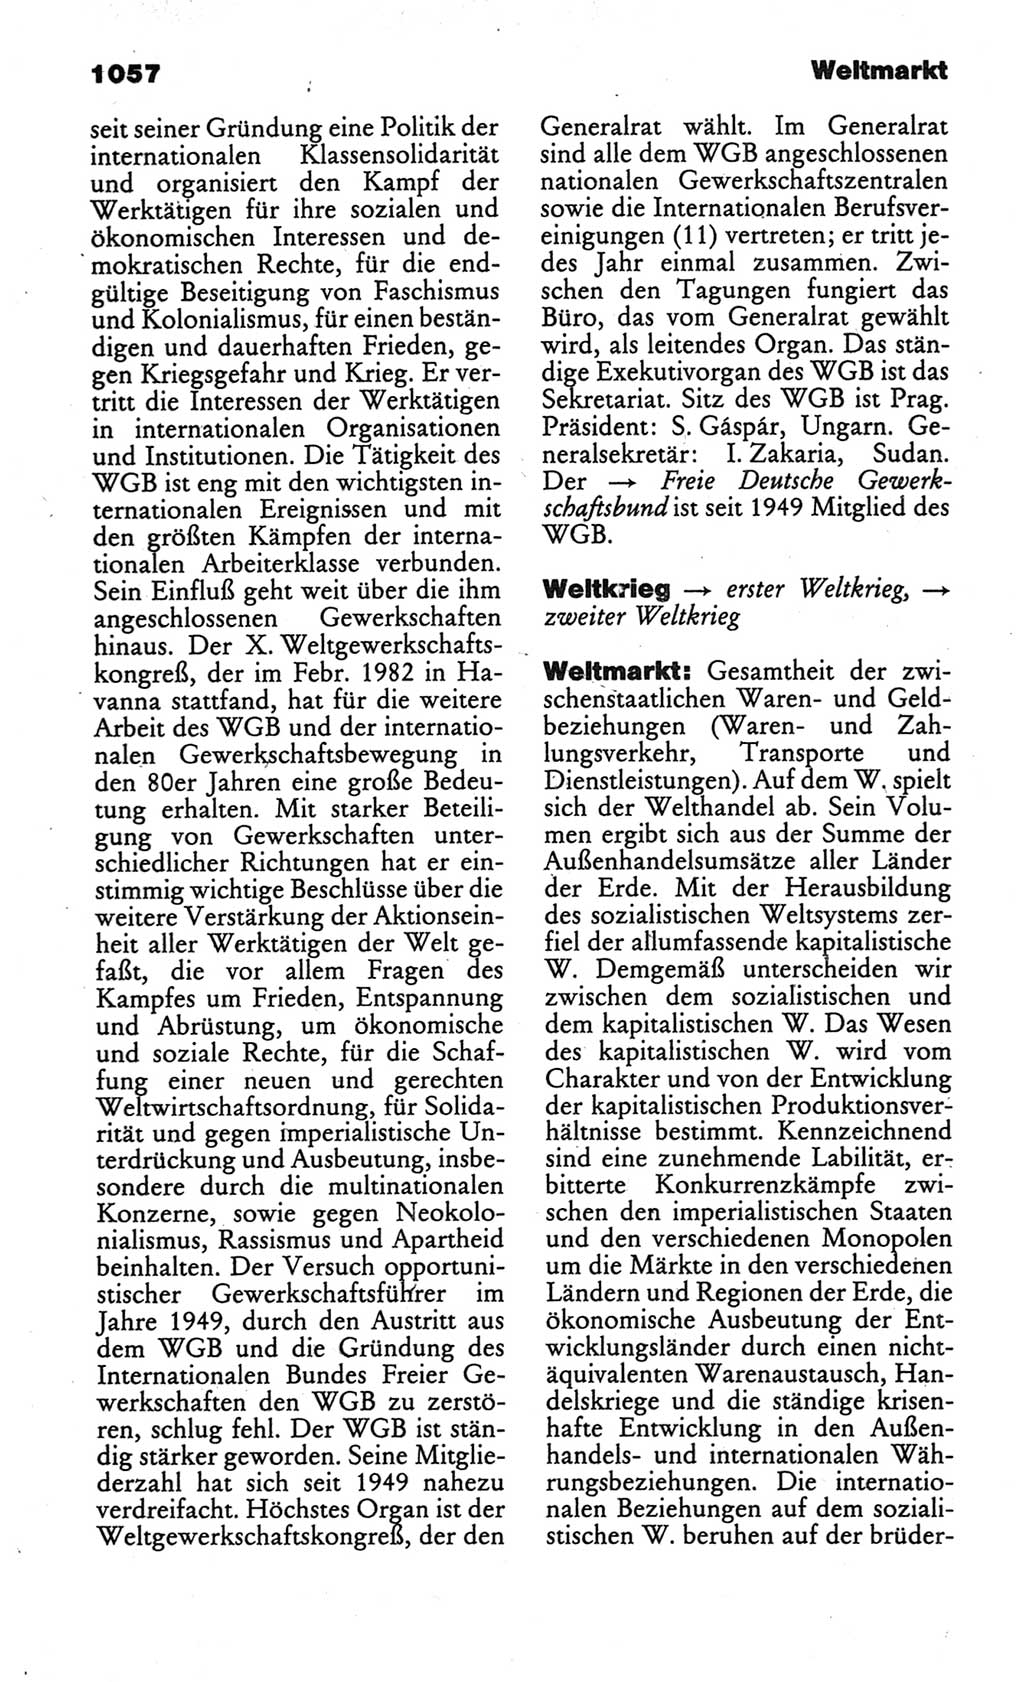 Kleines politisches Wörterbuch [Deutsche Demokratische Republik (DDR)] 1986, Seite 1057 (Kl. pol. Wb. DDR 1986, S. 1057)